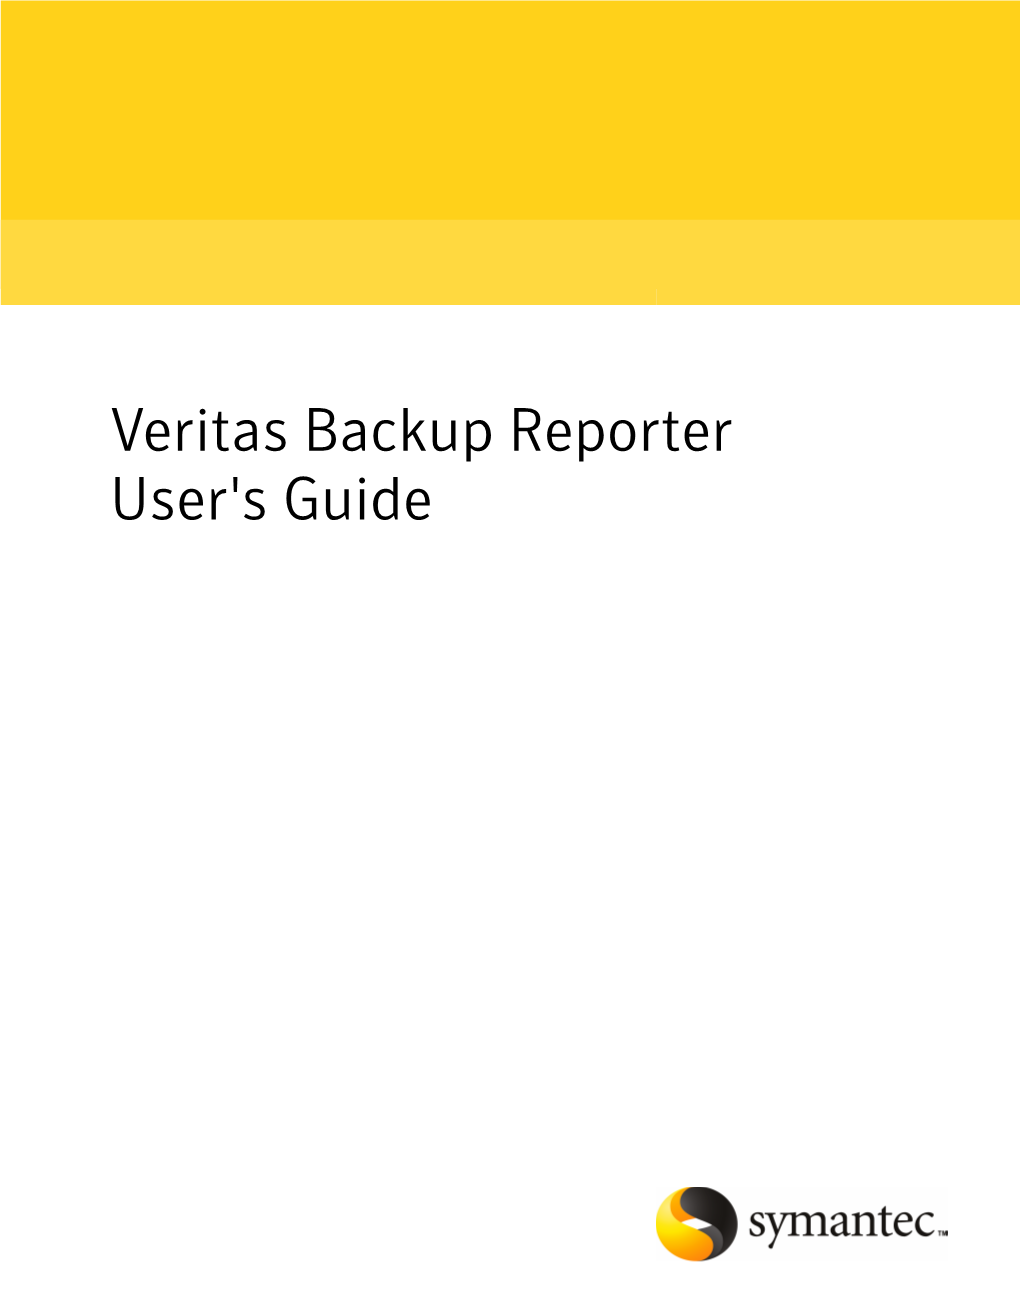 Veritas Backup Reporter User's Guide Veritas Backup Reporter User's Guide